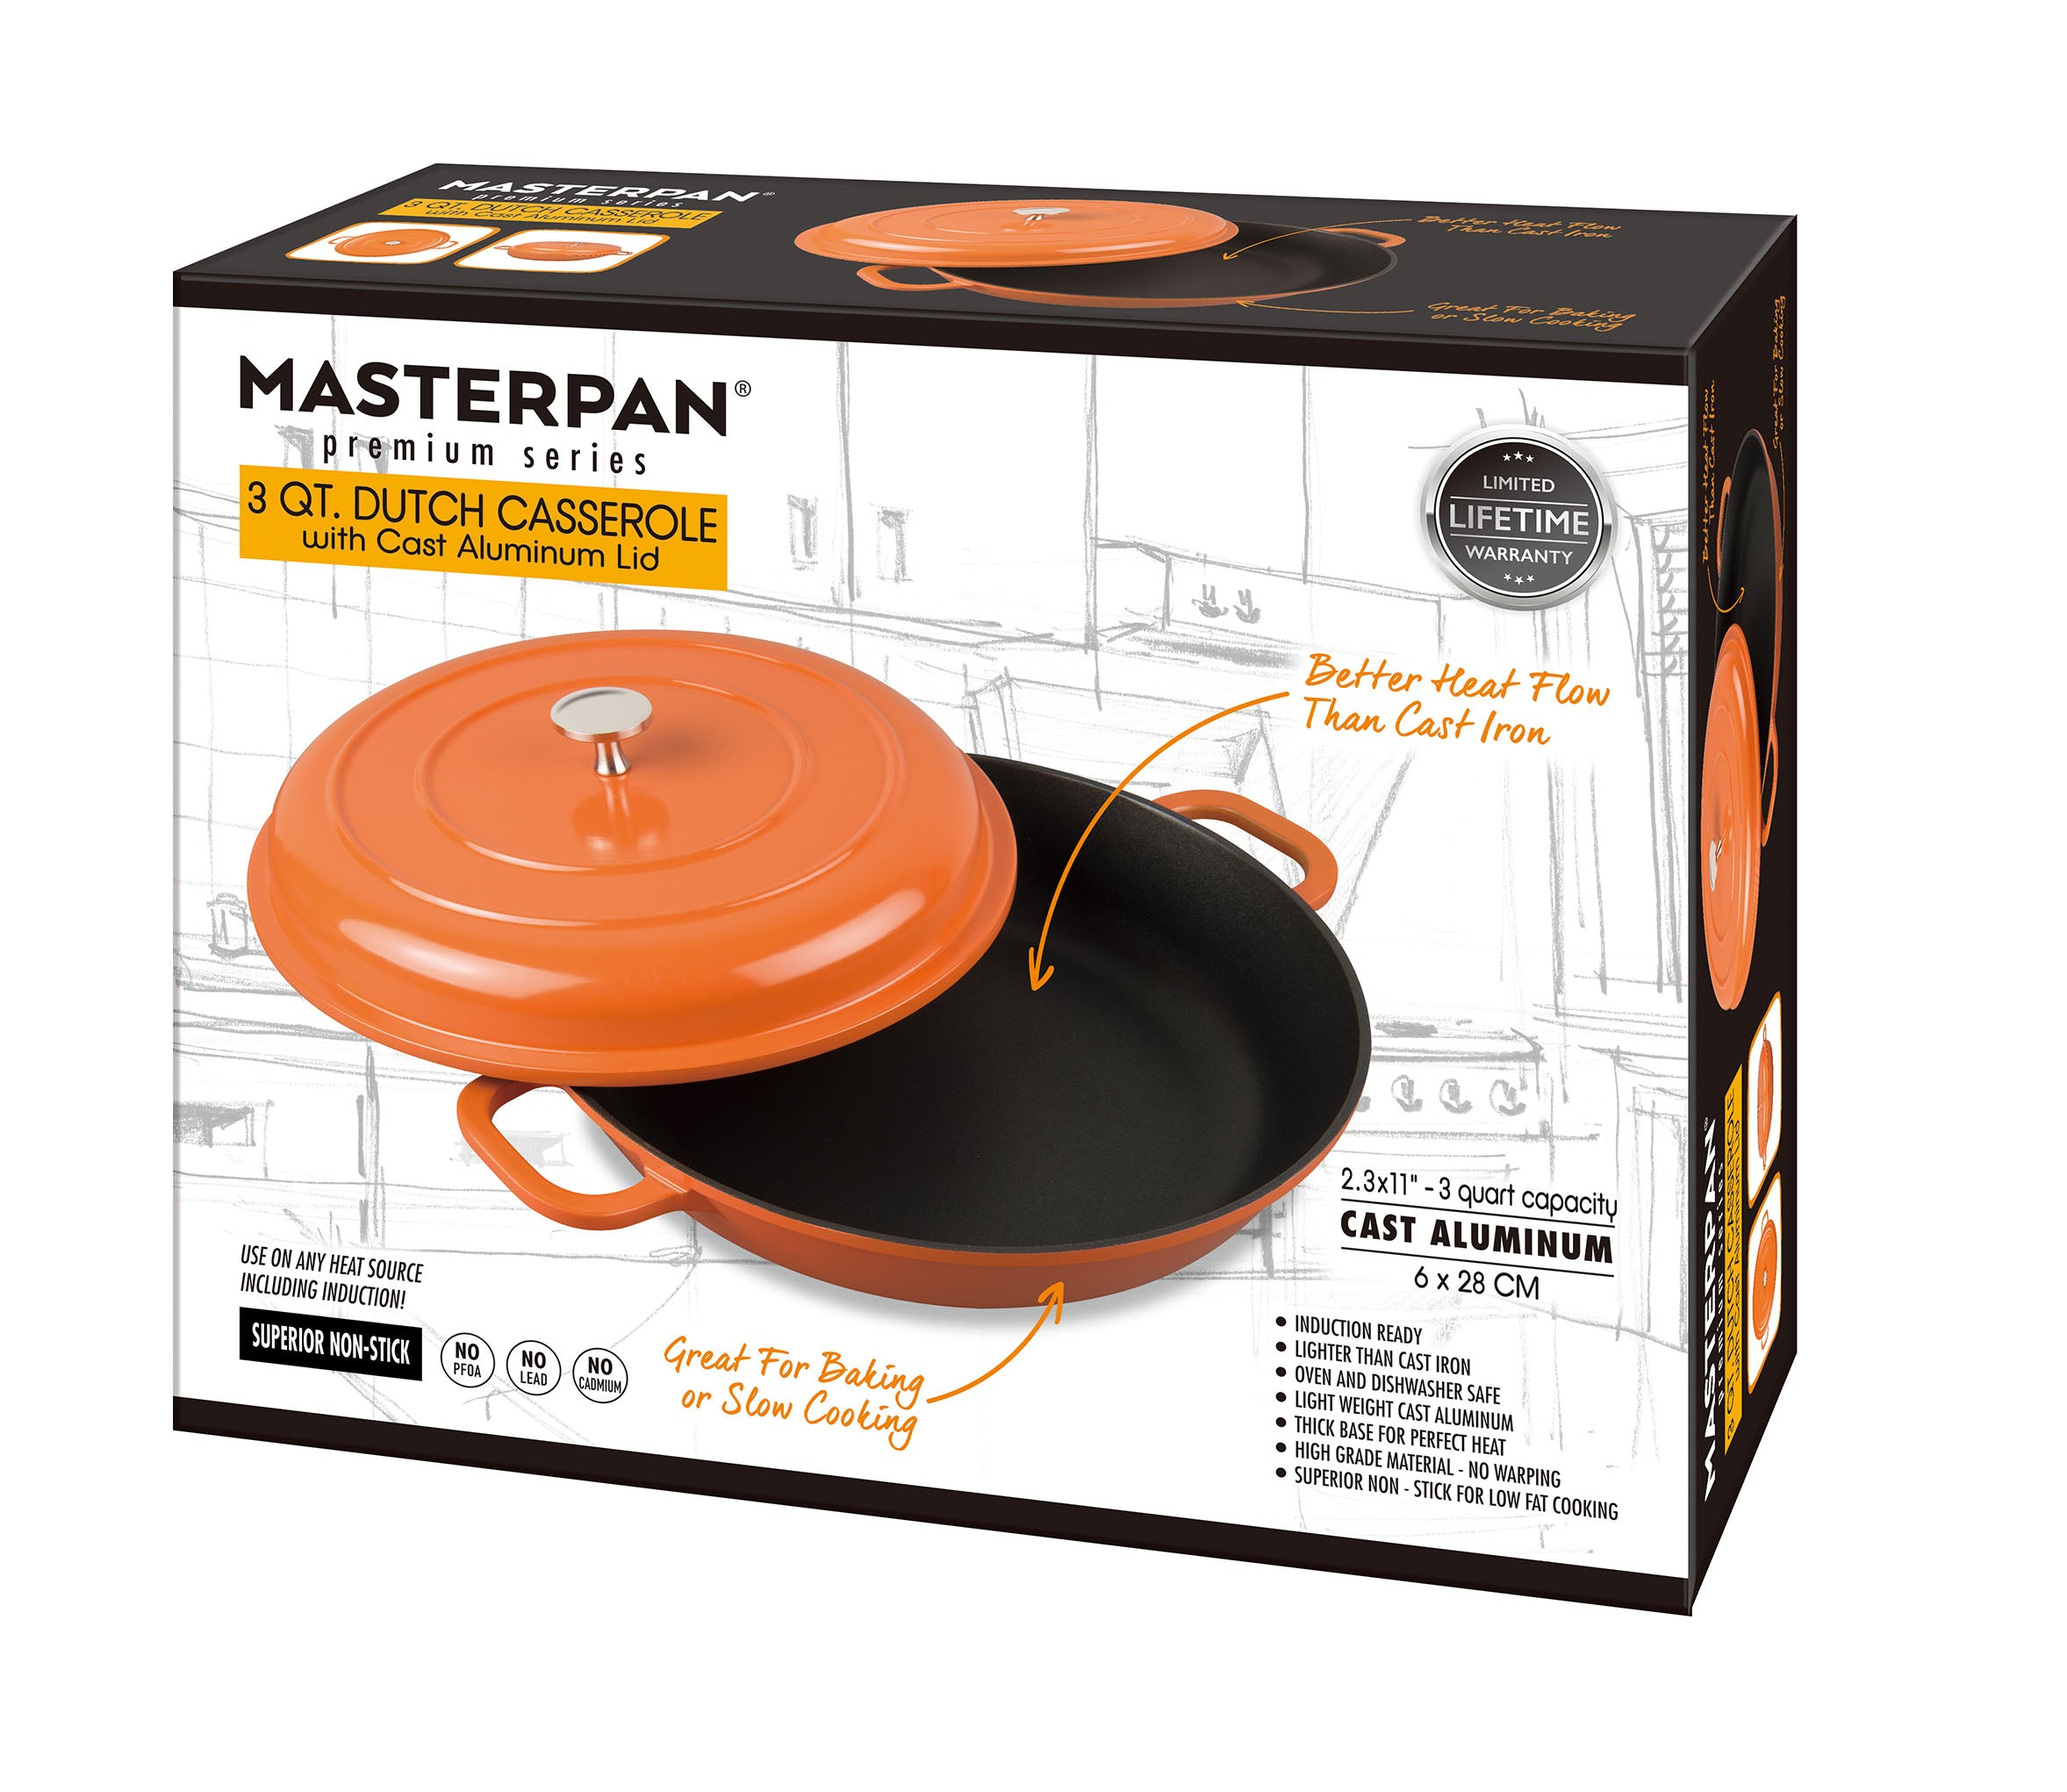 MasterPan 3 qt Non-Stick Cast Aluminum Dutch Casserole 11 in Orange